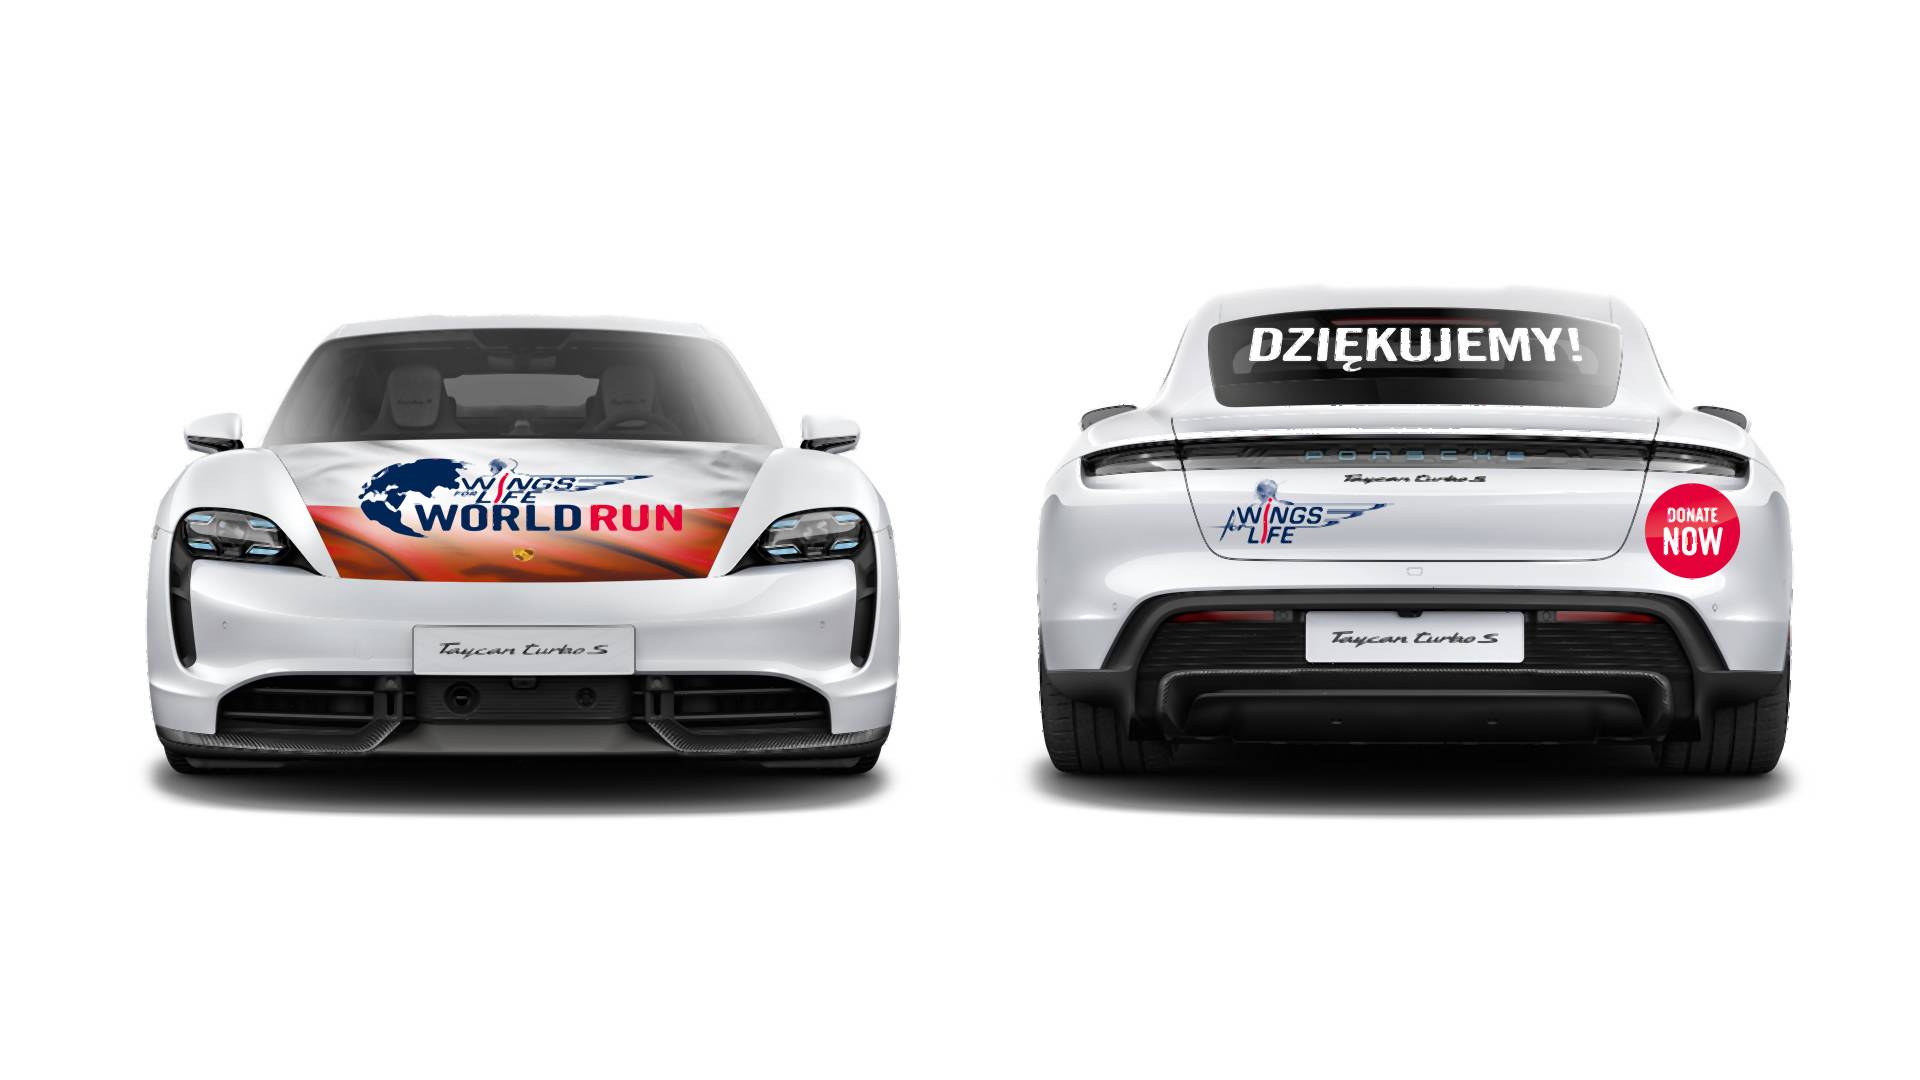 Wings for Life World Run Poznań 2020. Biegaczy będzie "gonił" elektryczny Porsche Taycan Turbo S